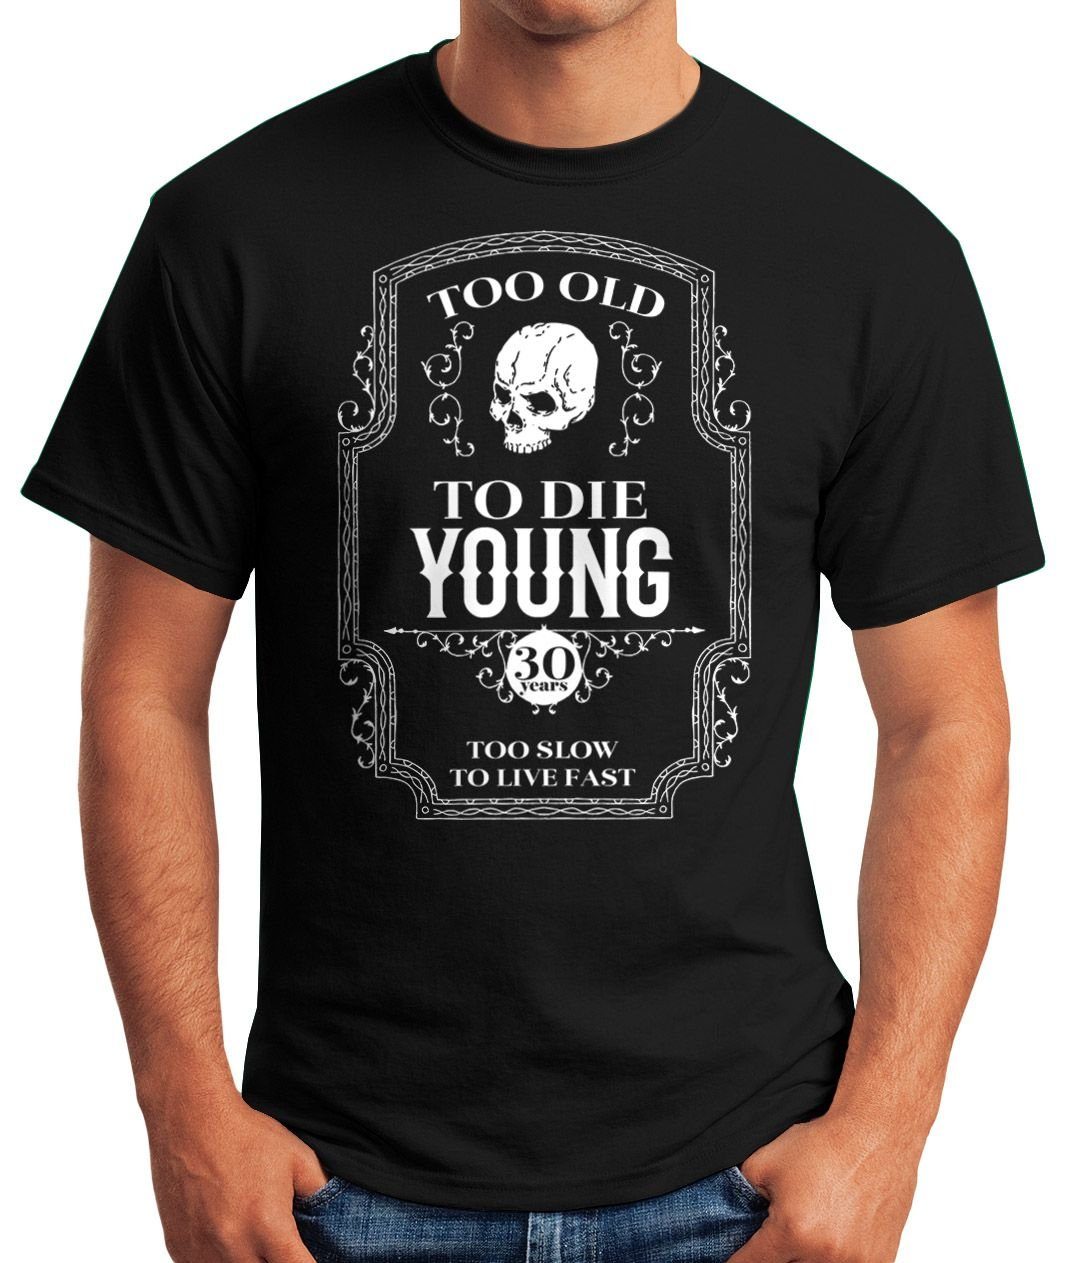 MoonWorks Print-Shirt Herren Geschenk T-Shirt Too Spruch Geburtstag mit schwarz Old Young 30 Print To Die Moonworks® Jahre 30-80 Skull